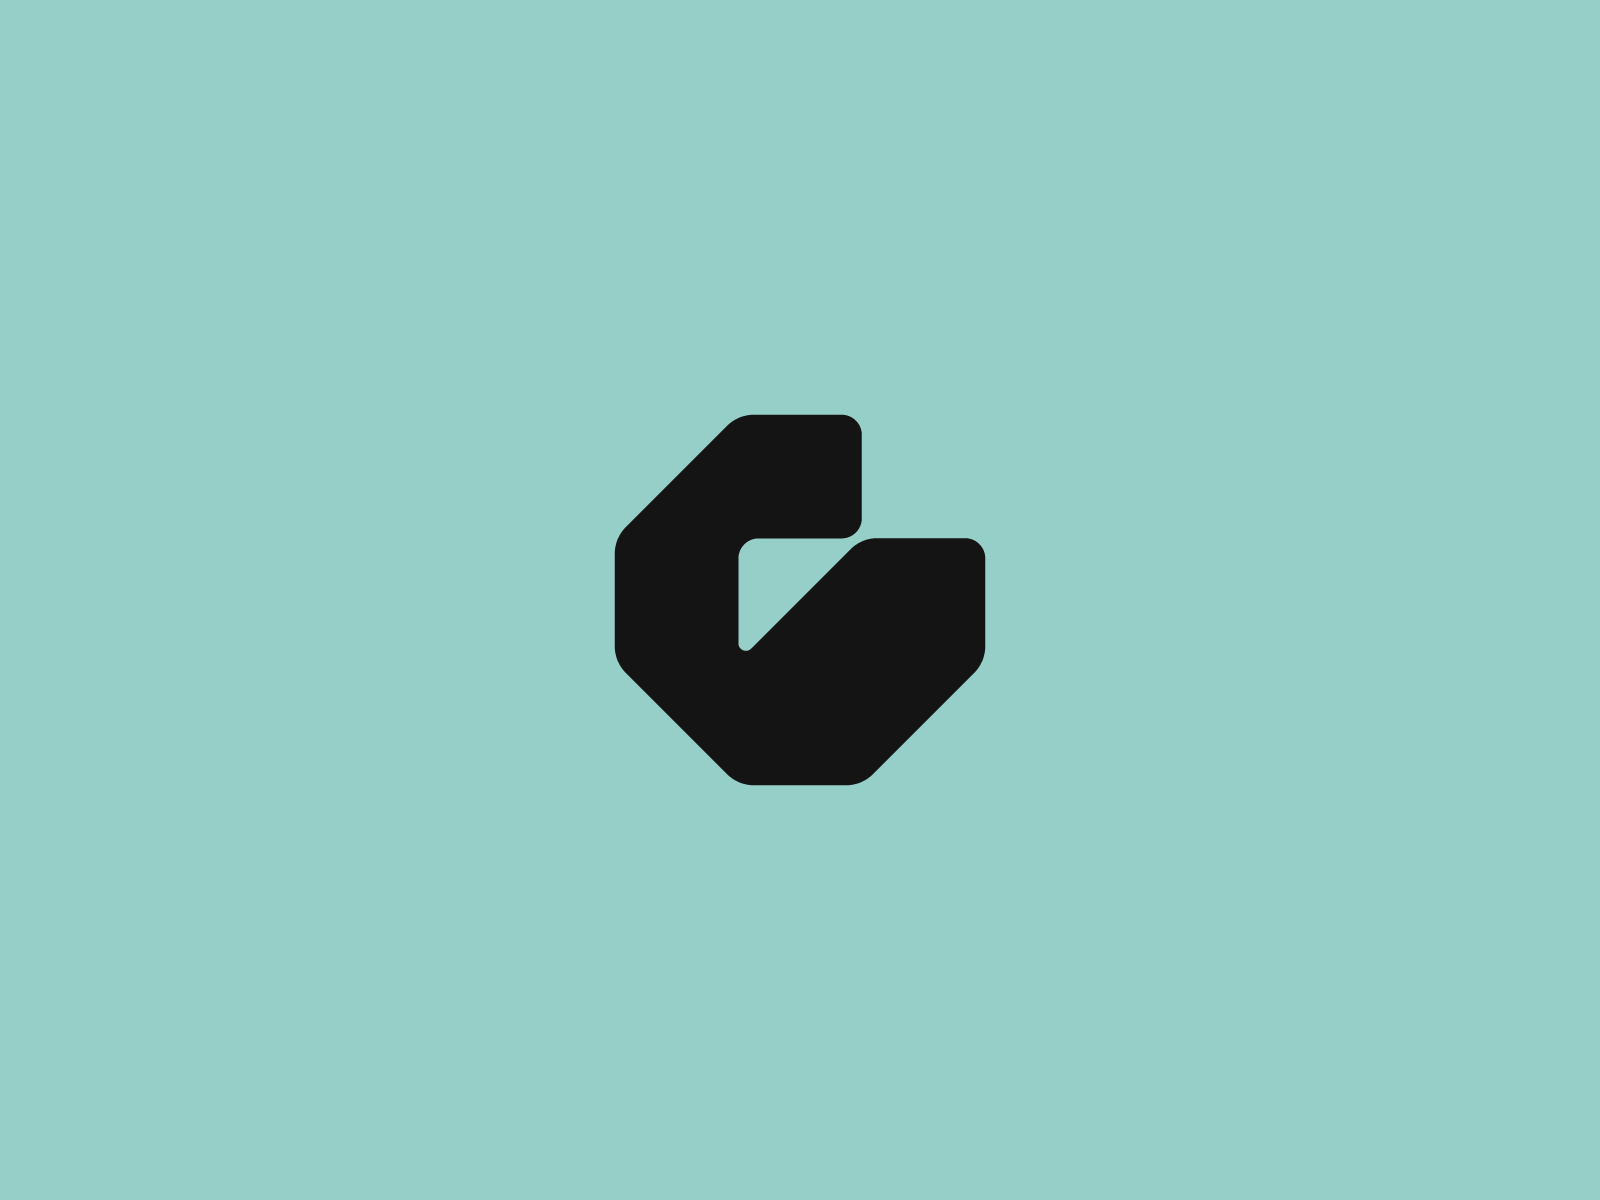 G monogram branding concept design identity letter logo logotype monogram